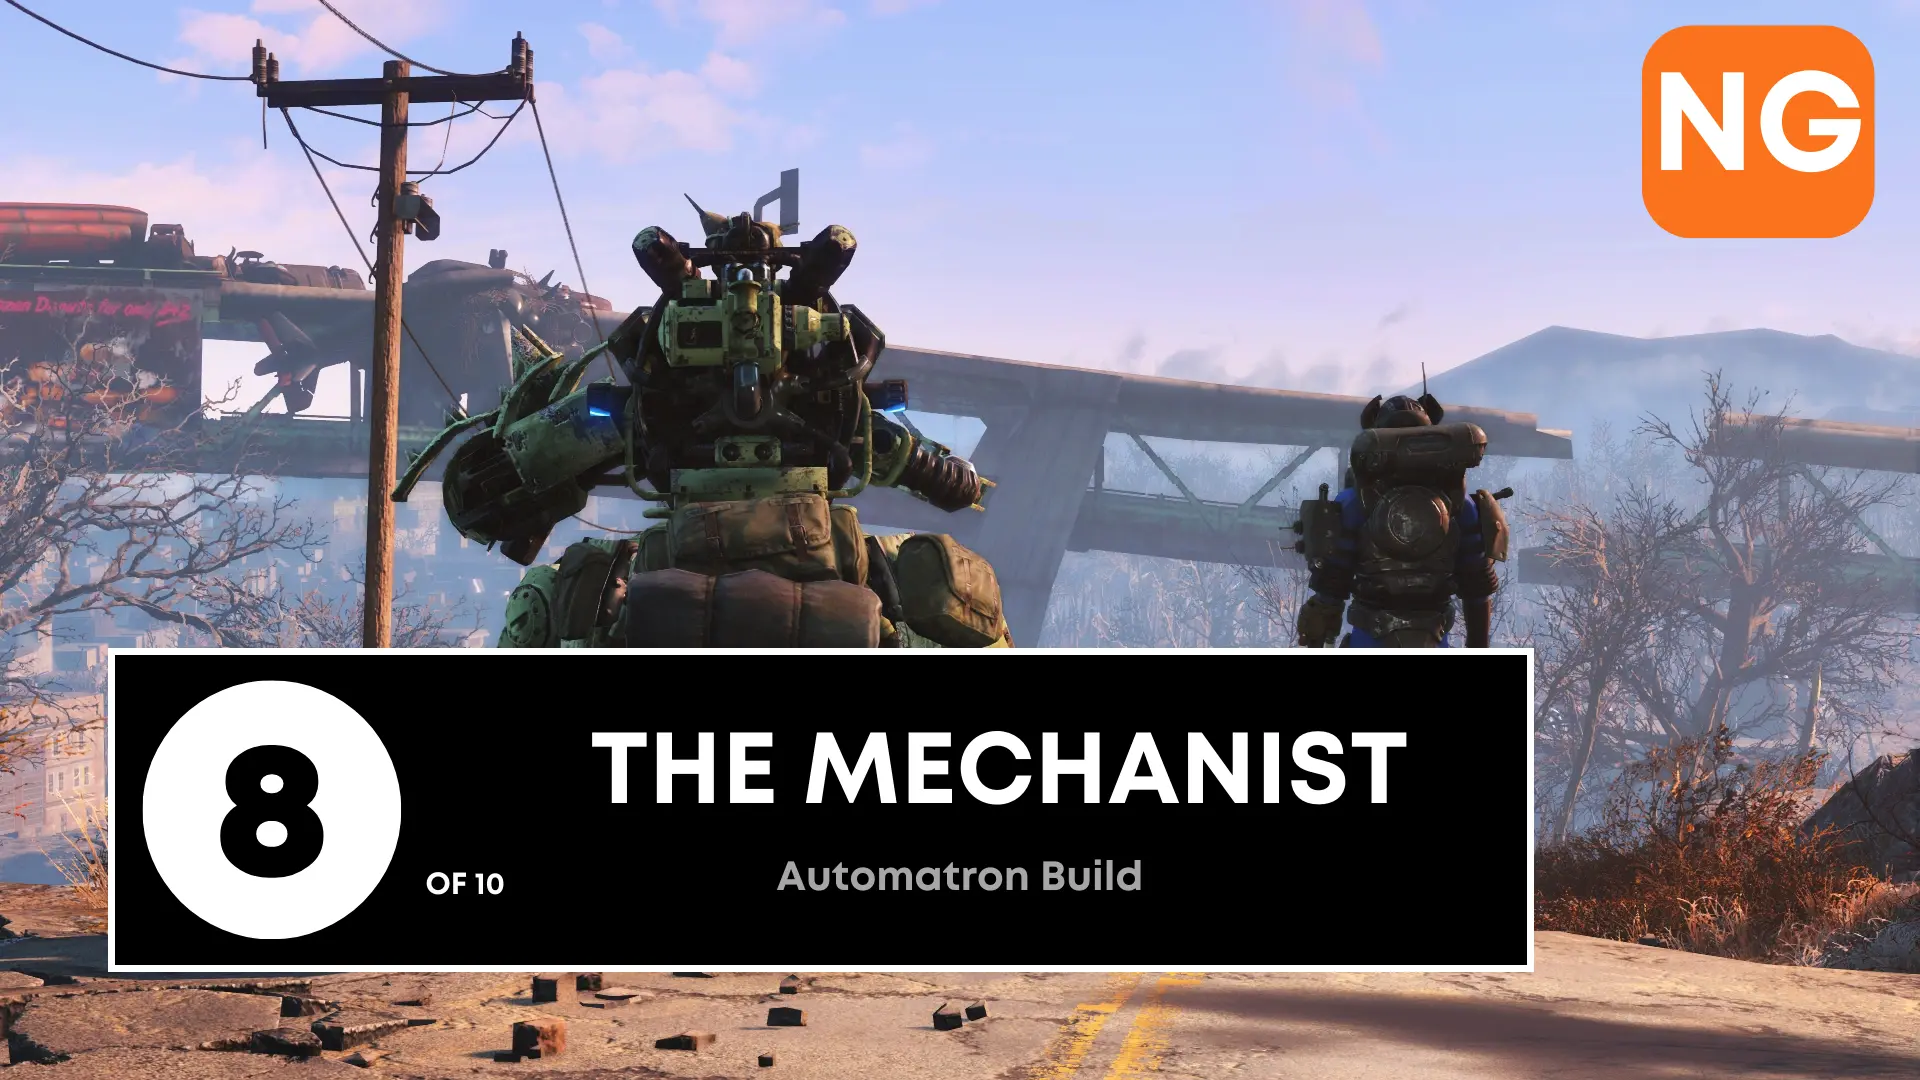 8. The Mechanist (Automatron Robot Build)